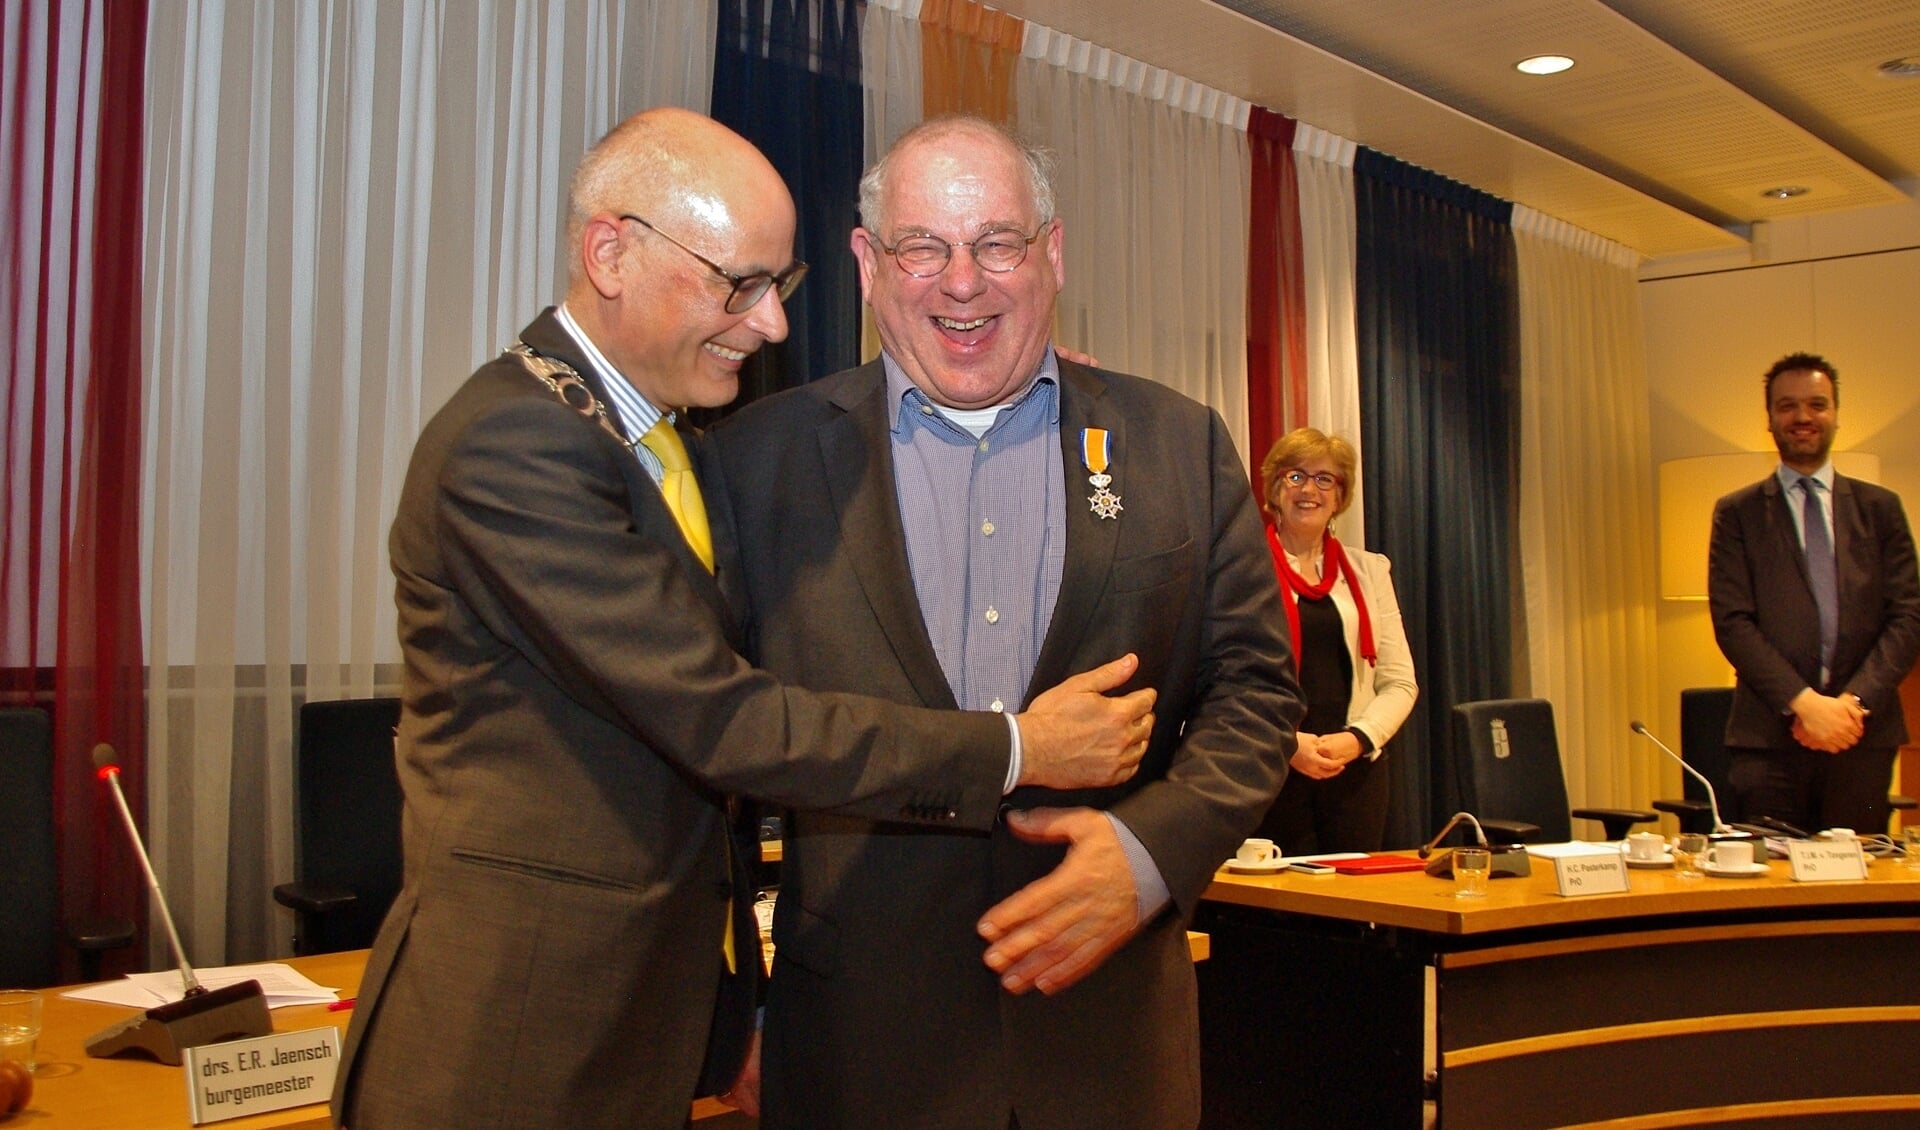 Burgemeester Emile Jaensch feliciteert Tim van Tongeren als eerste met zijn Koninklijke onderscheiding. | Foto Willemien Timmers